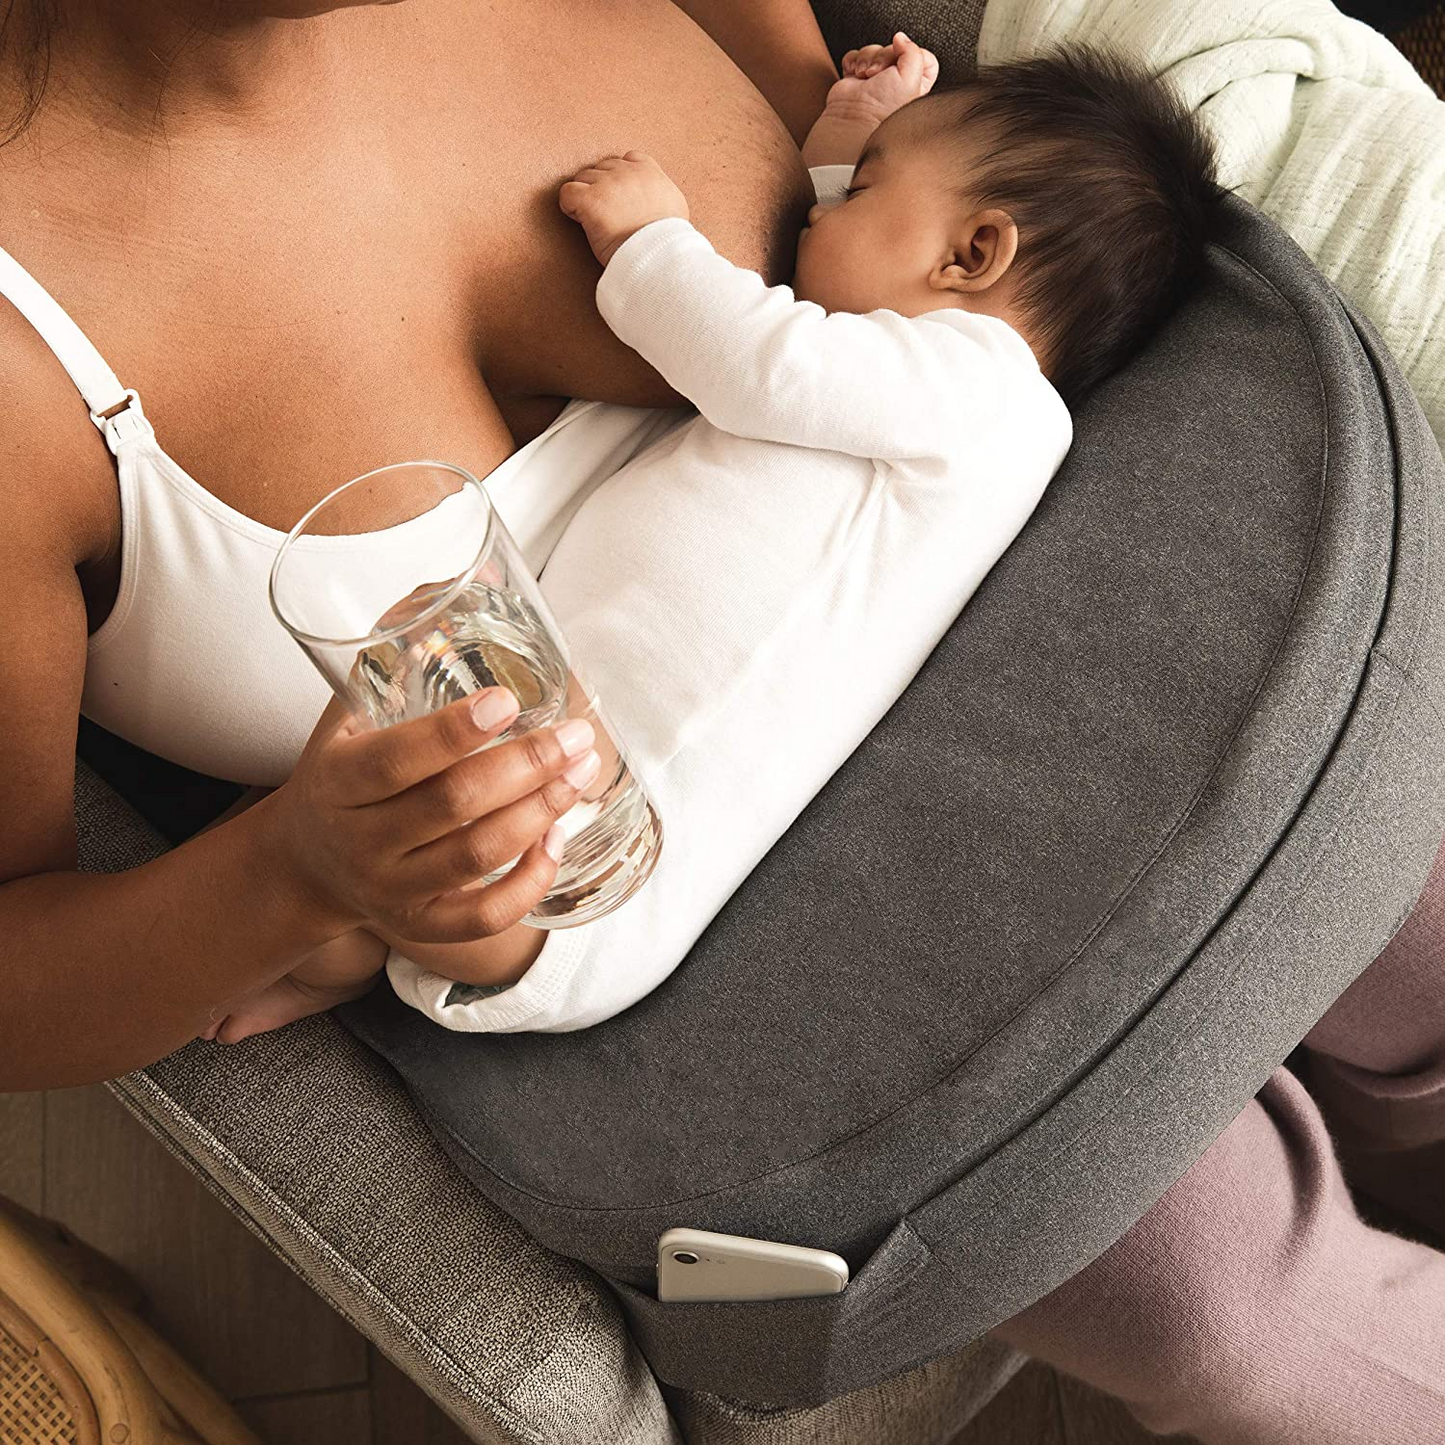 Frida Mom Travesseiro de amamentação ajustável - Travesseiro de amamentação personalizável para mamãe + conforto do bebê com suporte para as costas, alça ajustável ao redor da cintura, bolsos para alívio do calor